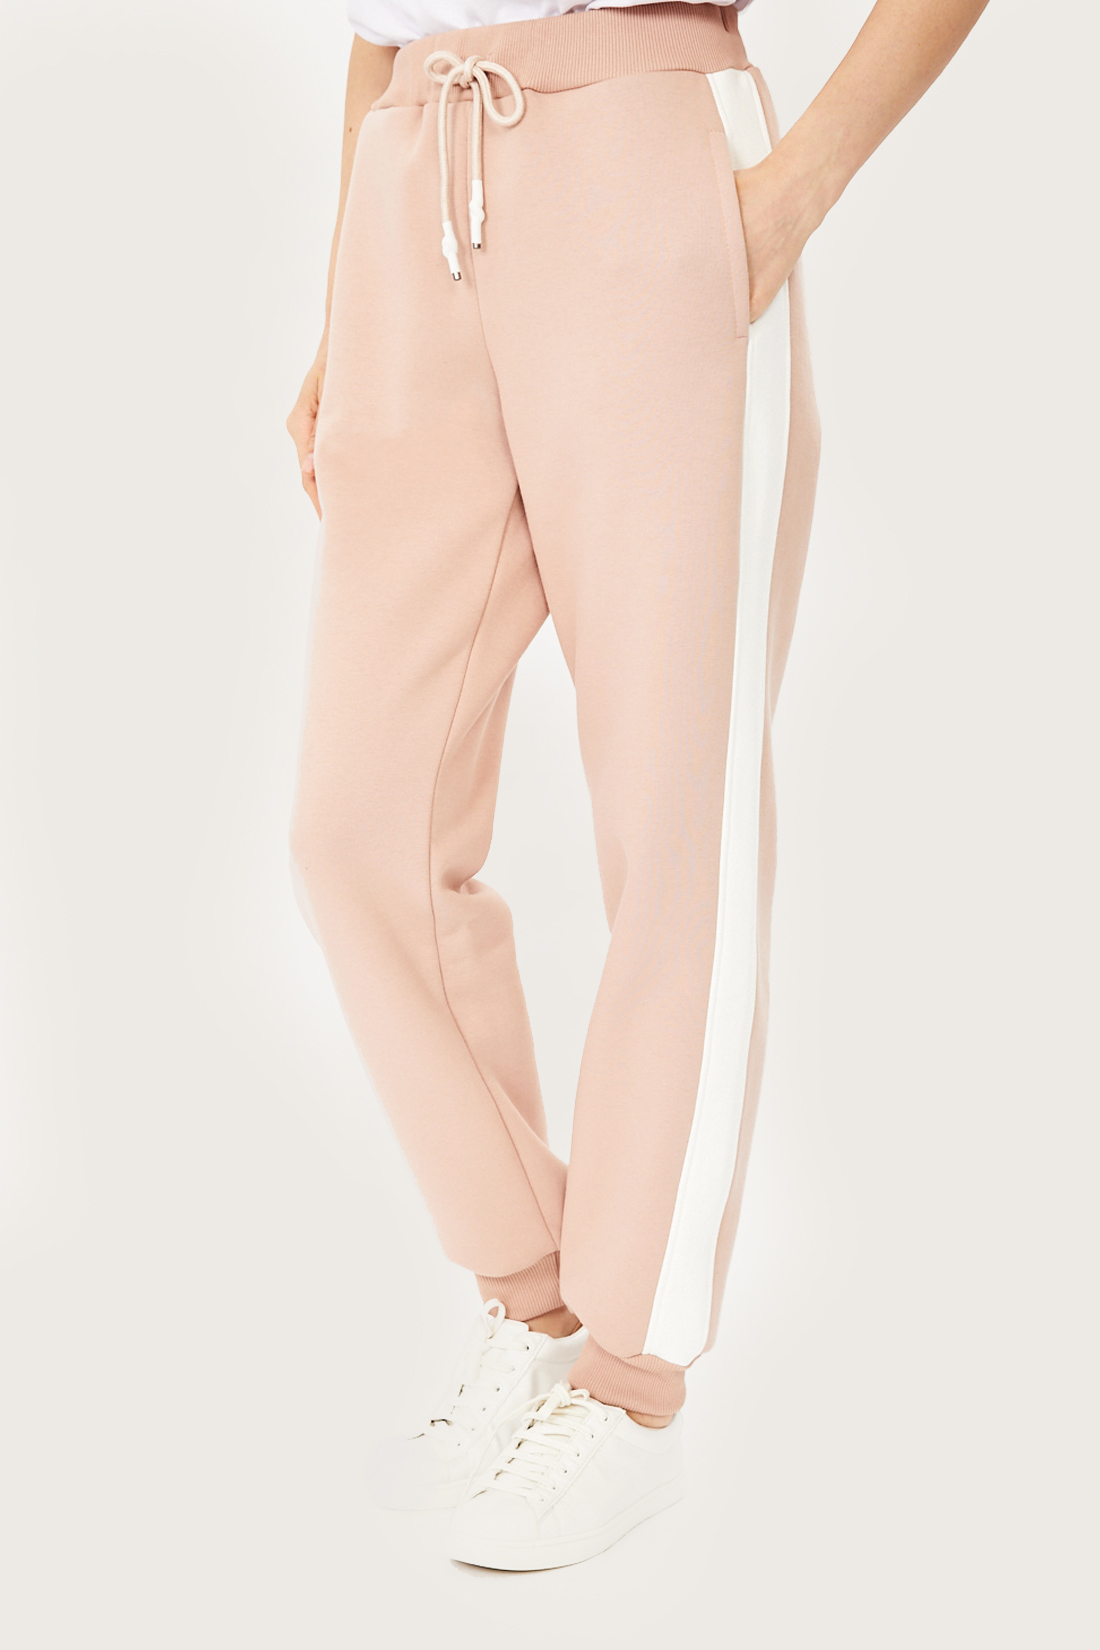 фото Спортивные брюки женские baon b291506 розовые xs